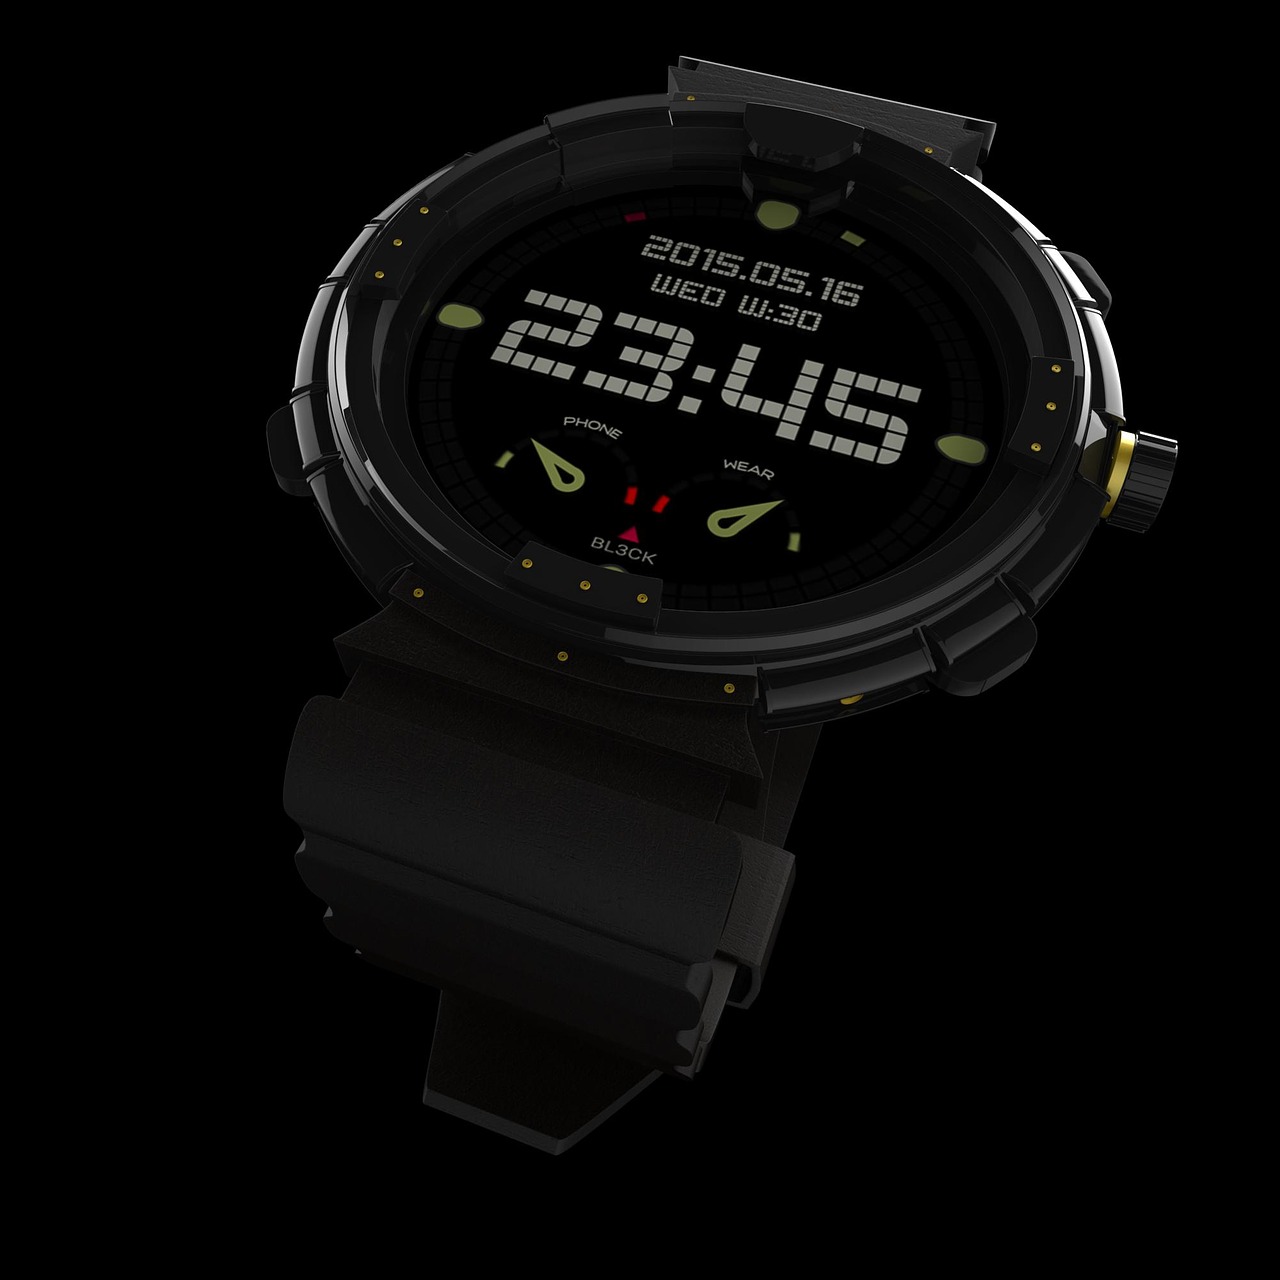 Jak wybrać smartwatch dla mężczyzny: Stylowe modele dla Samsung Galaxy Watch 3 i Fossil Gen 5